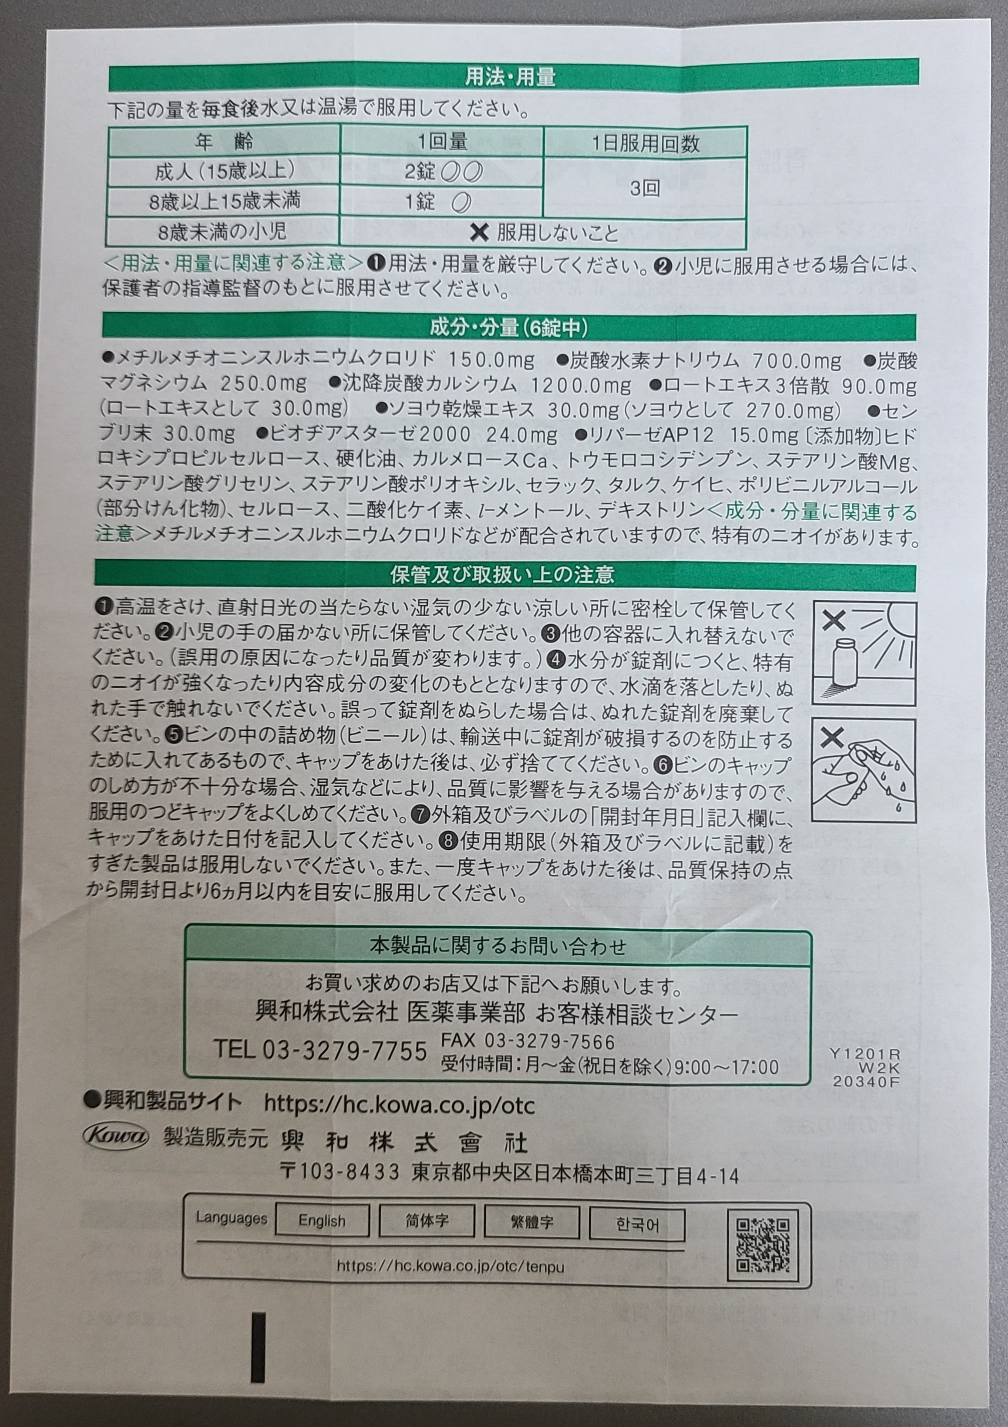 카베진 캬베진 일본 내수품 제품 설명서